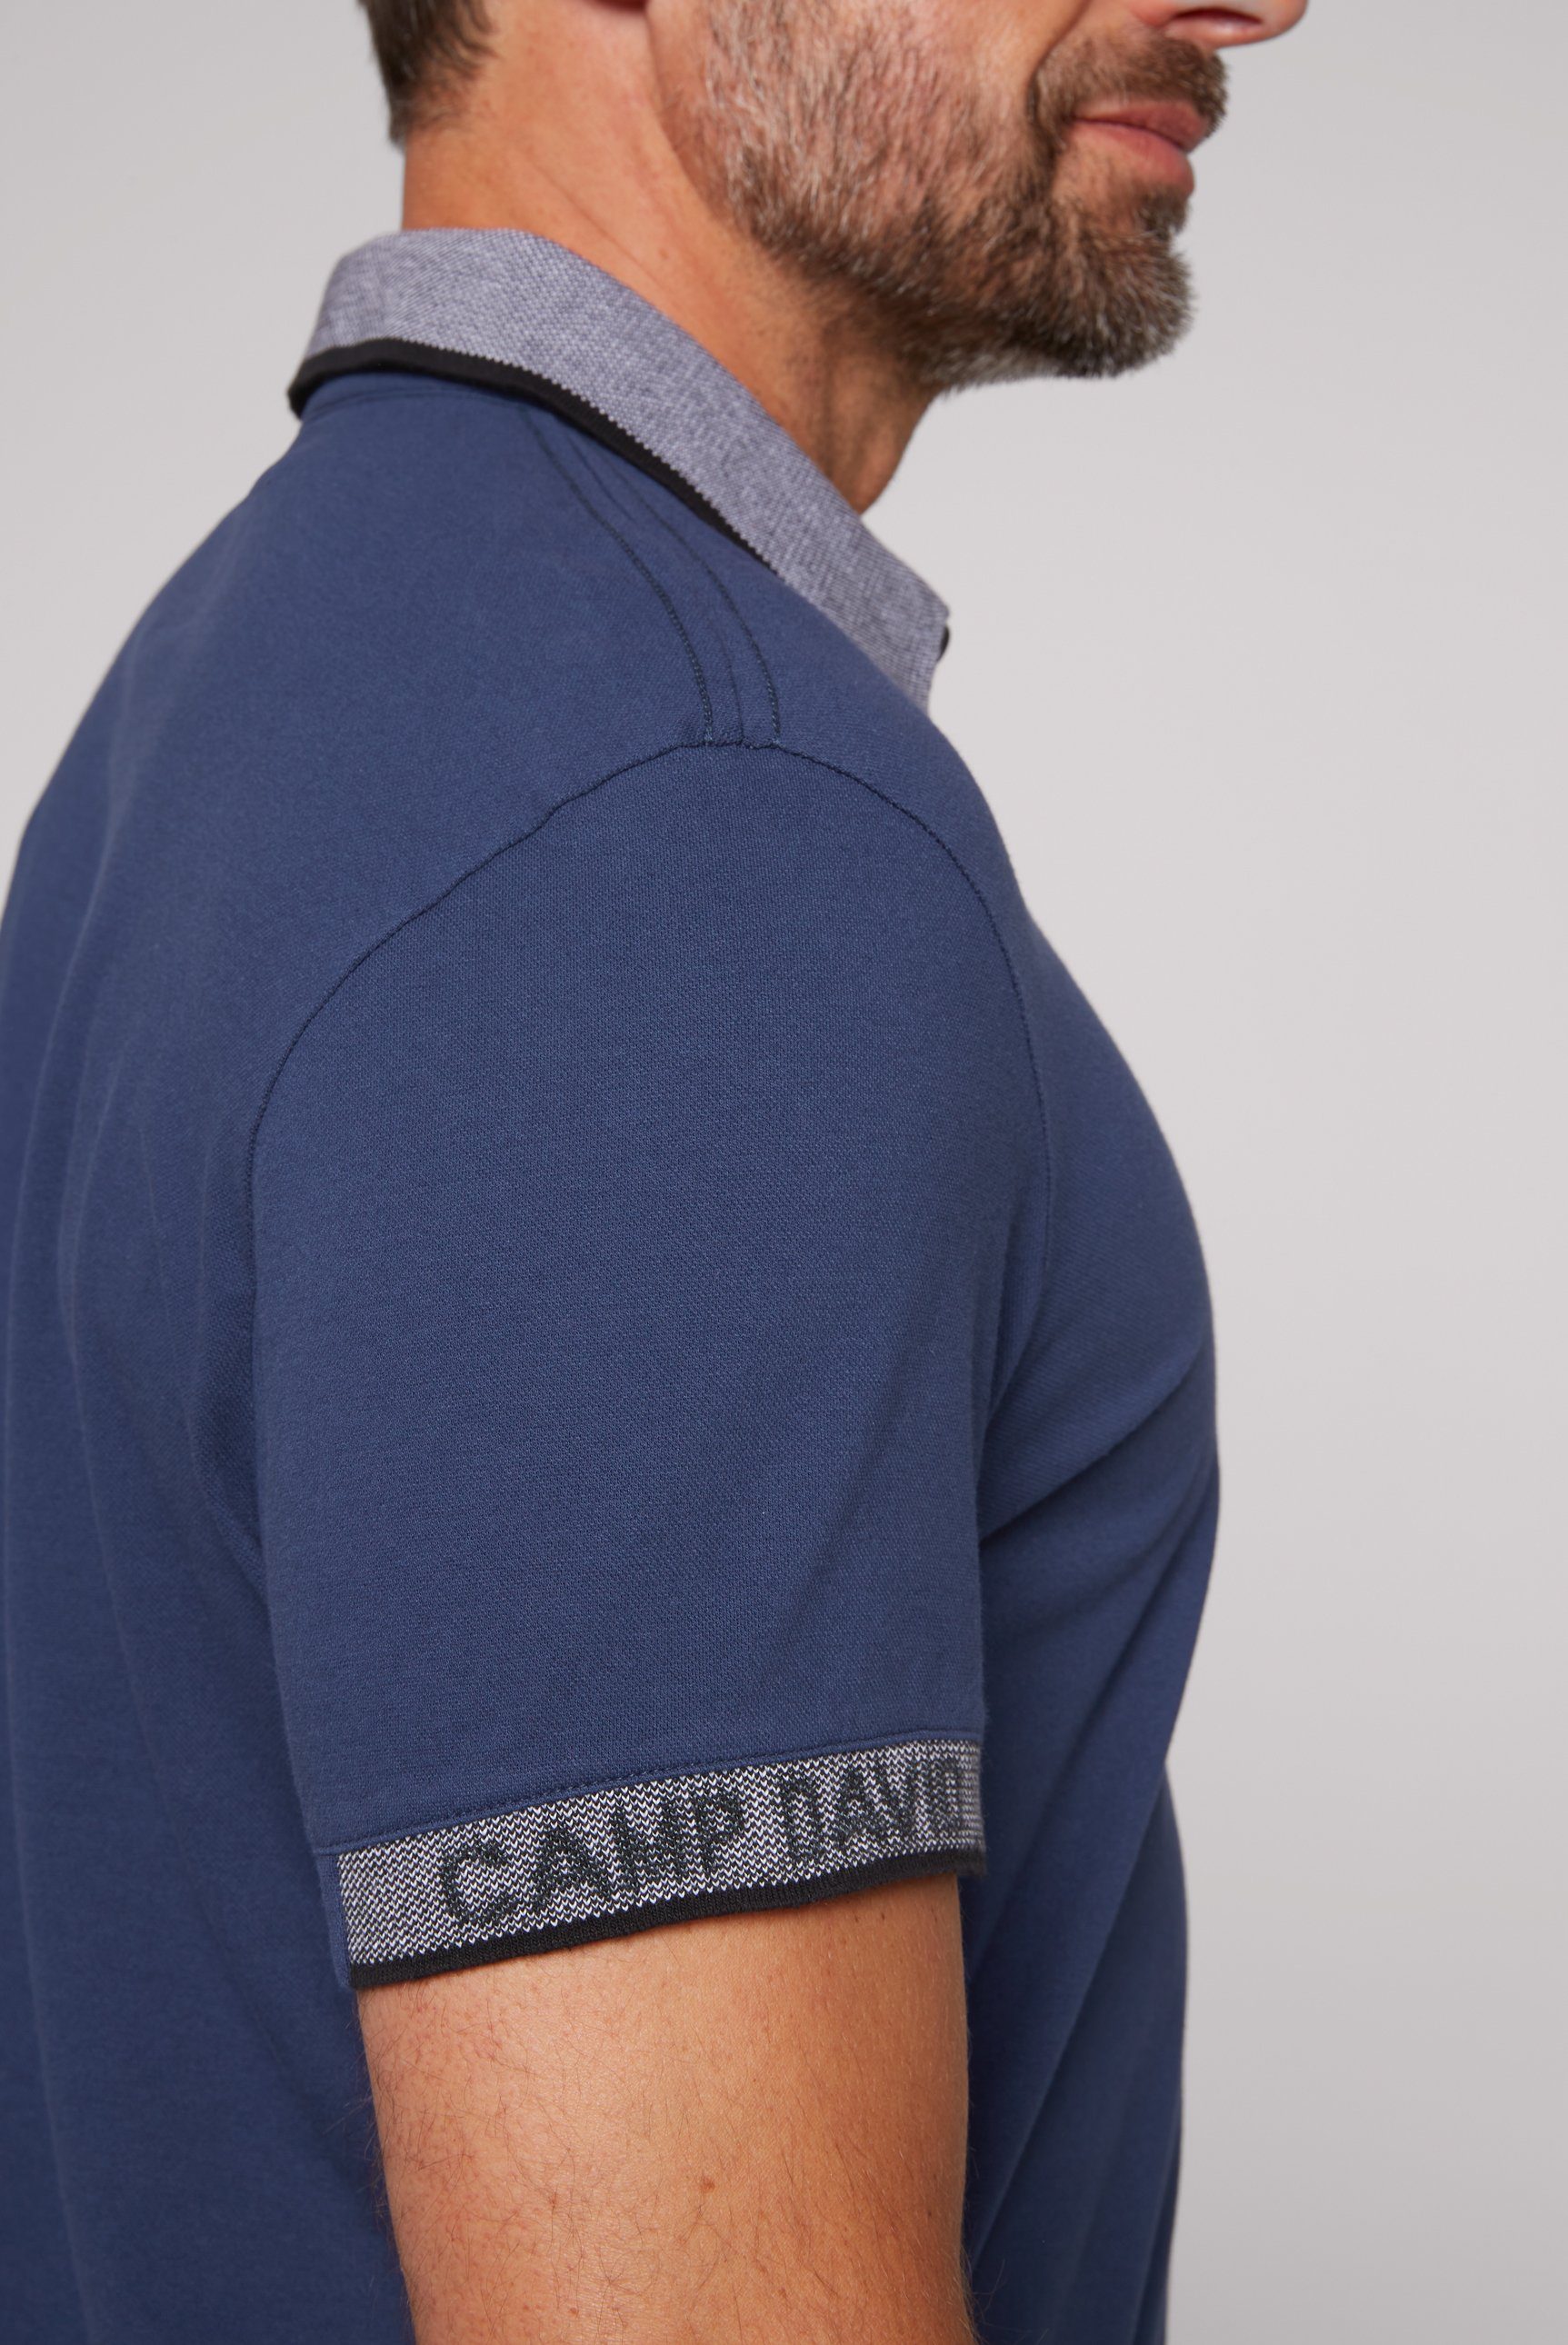 CAMP DAVID mit Bio-Baumwolle Poloshirt